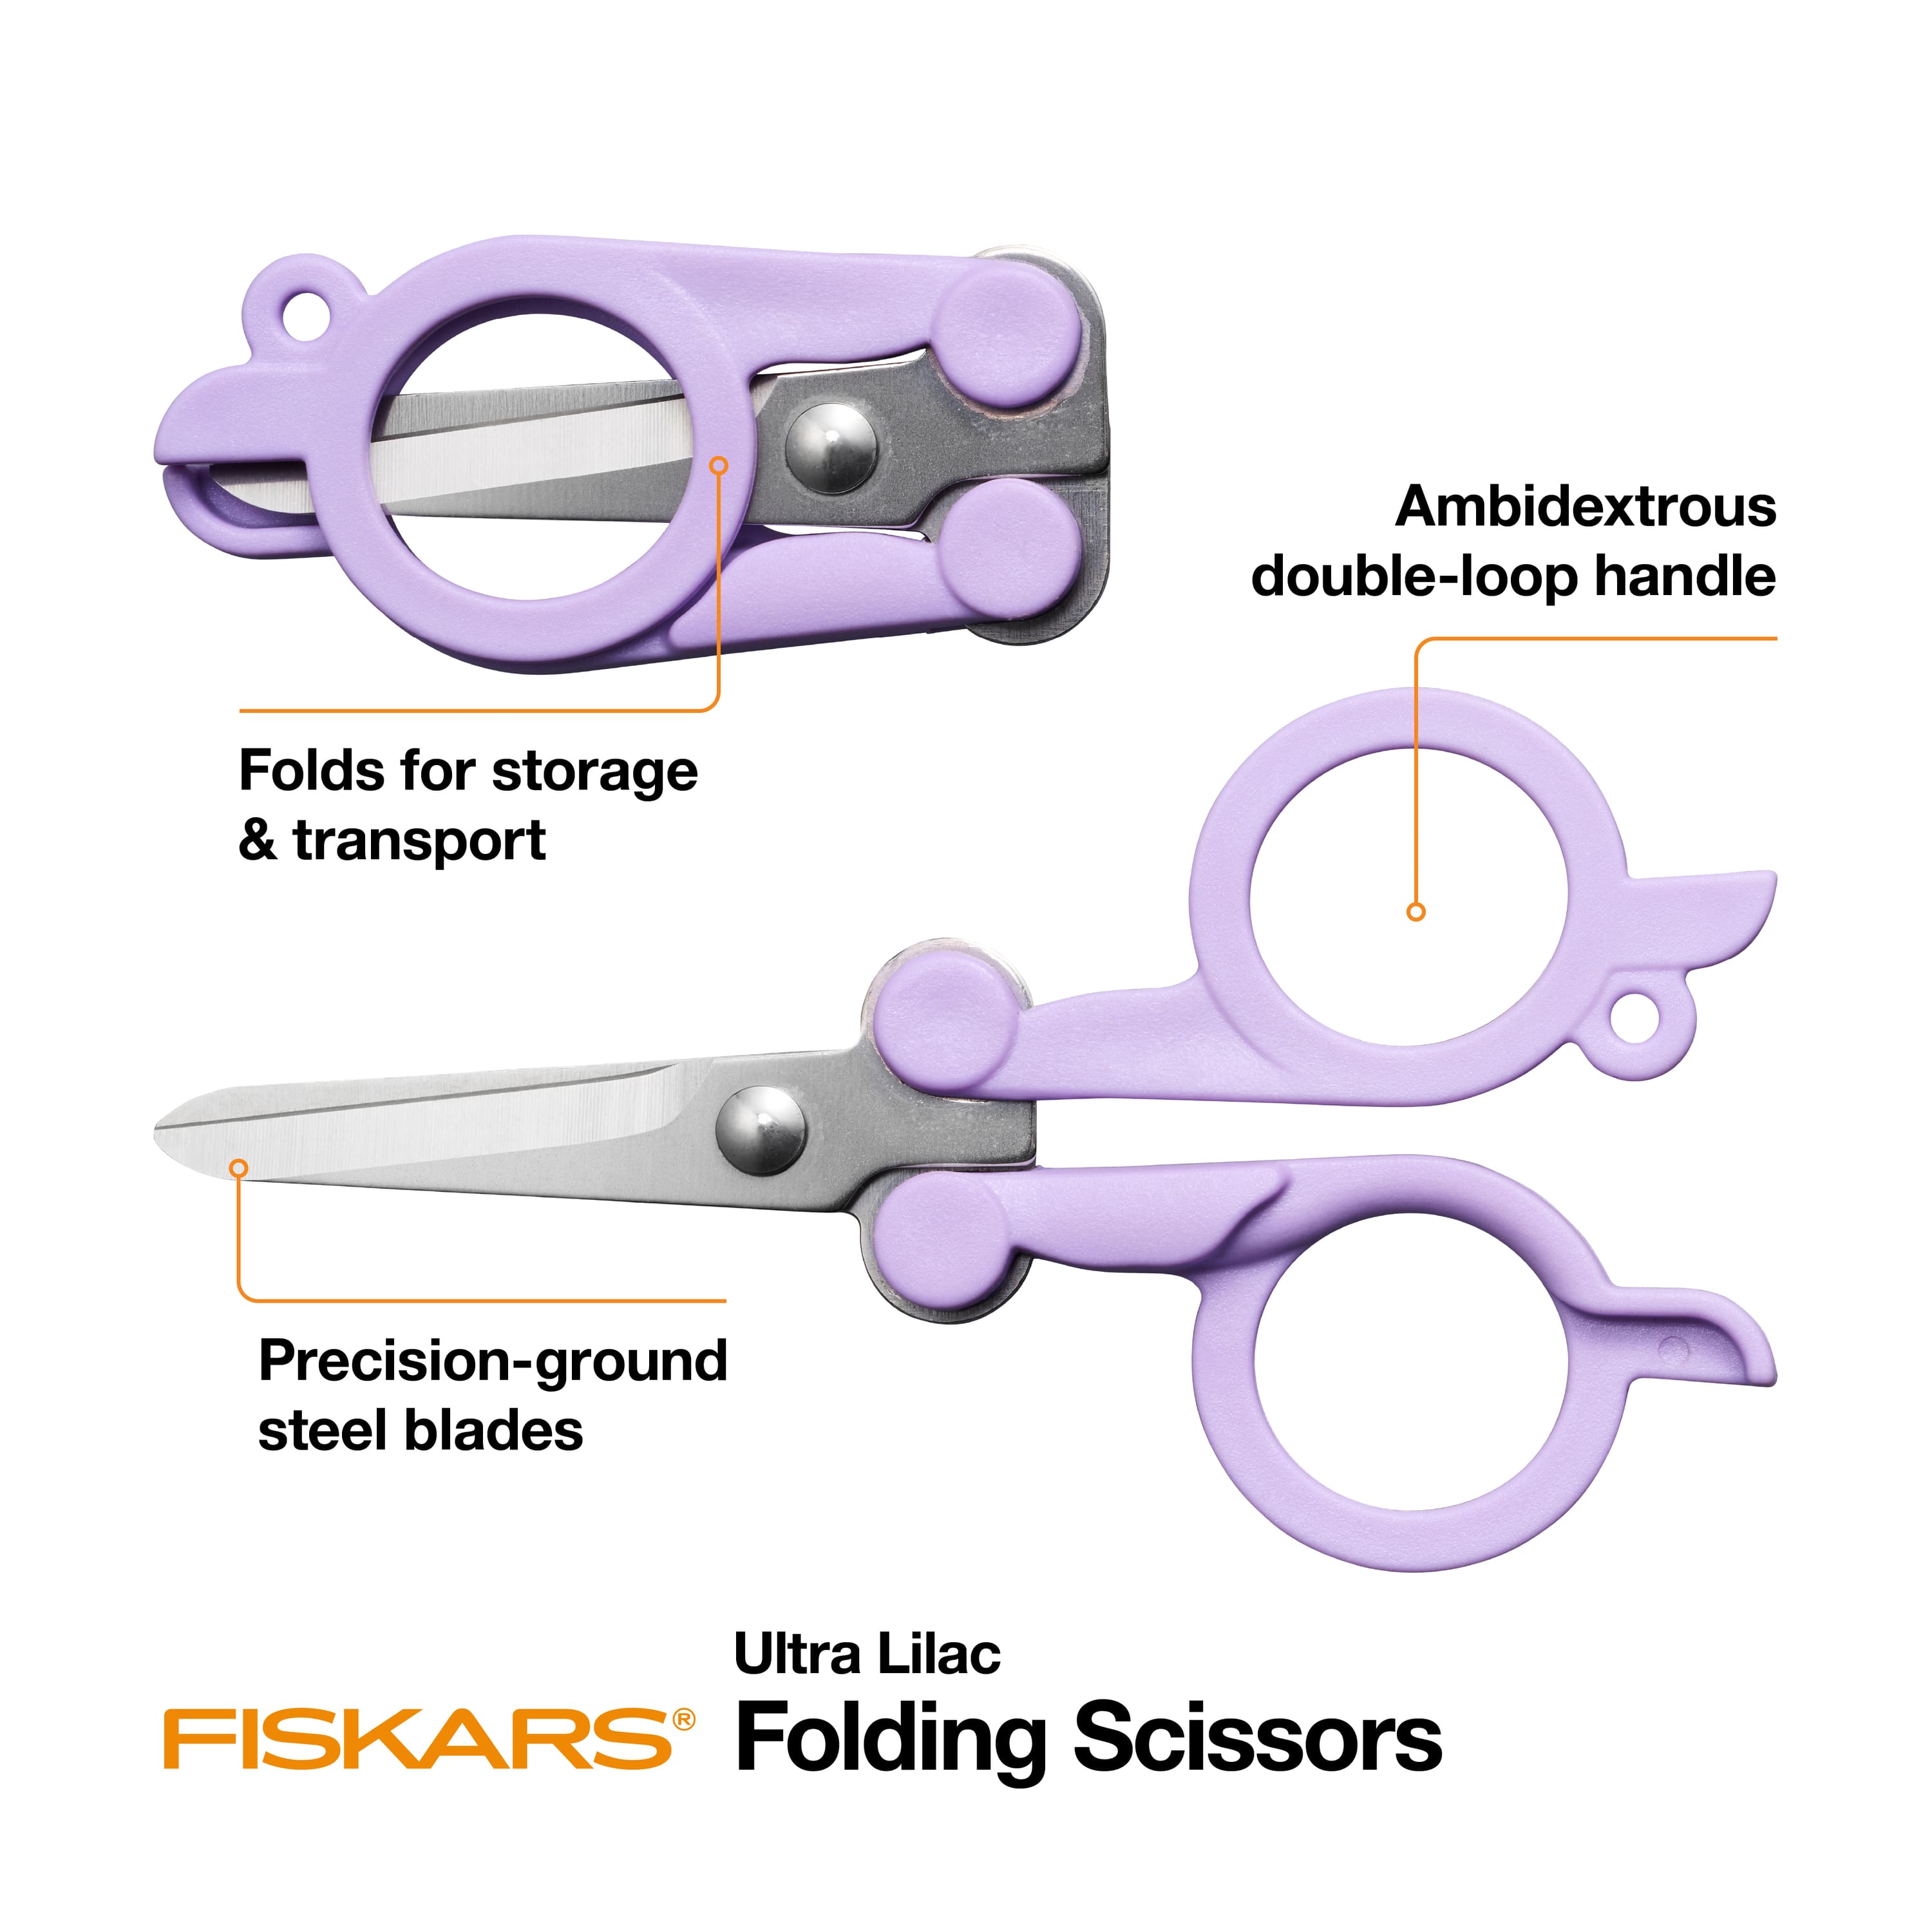 Fiskars Folding Scissors, Hobby Lobby